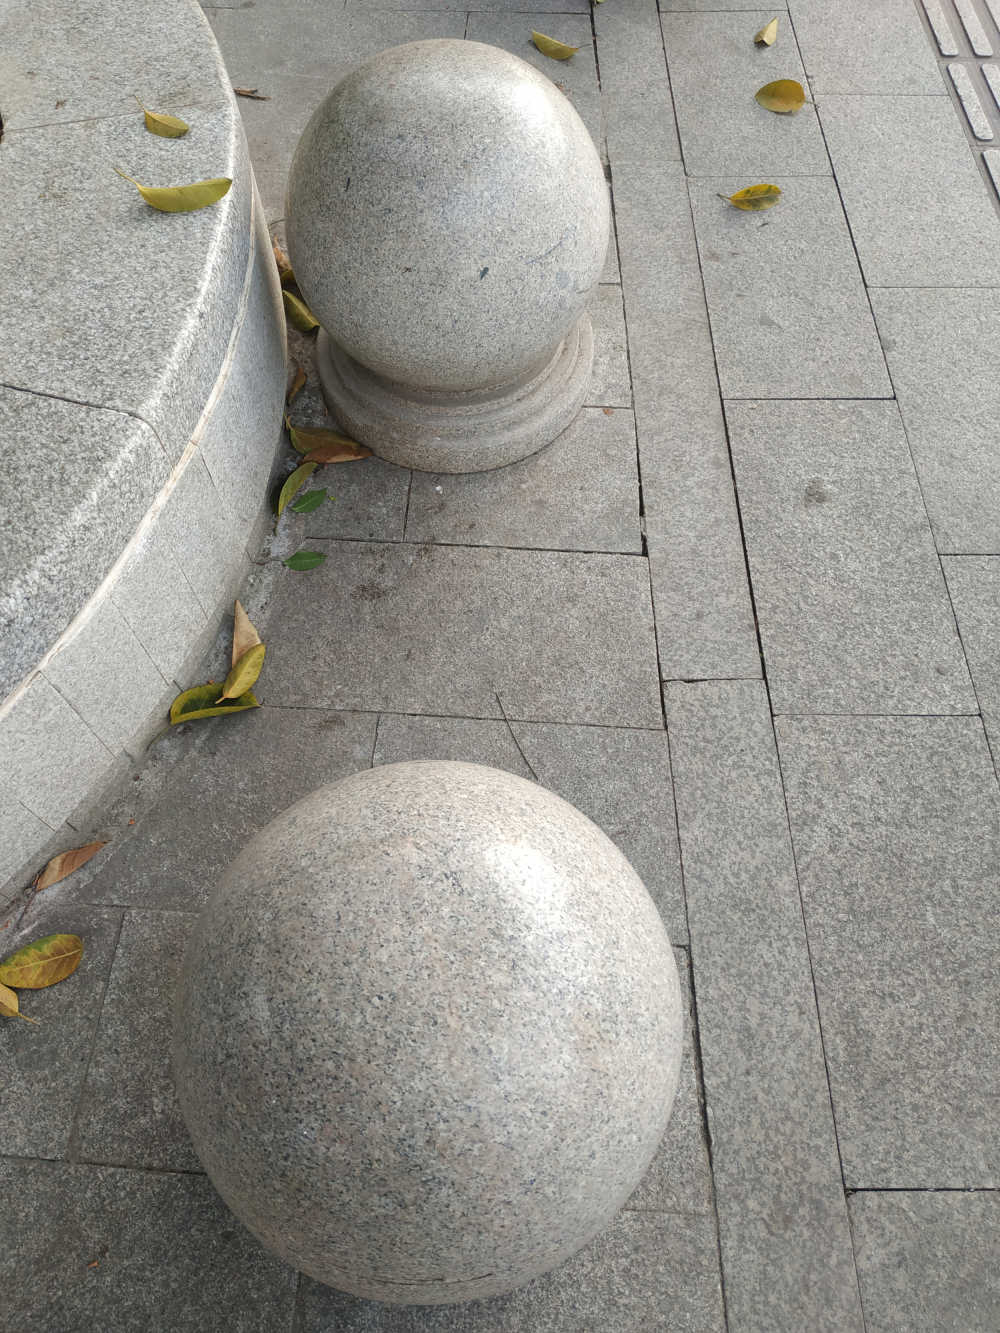 石板路上两个石球